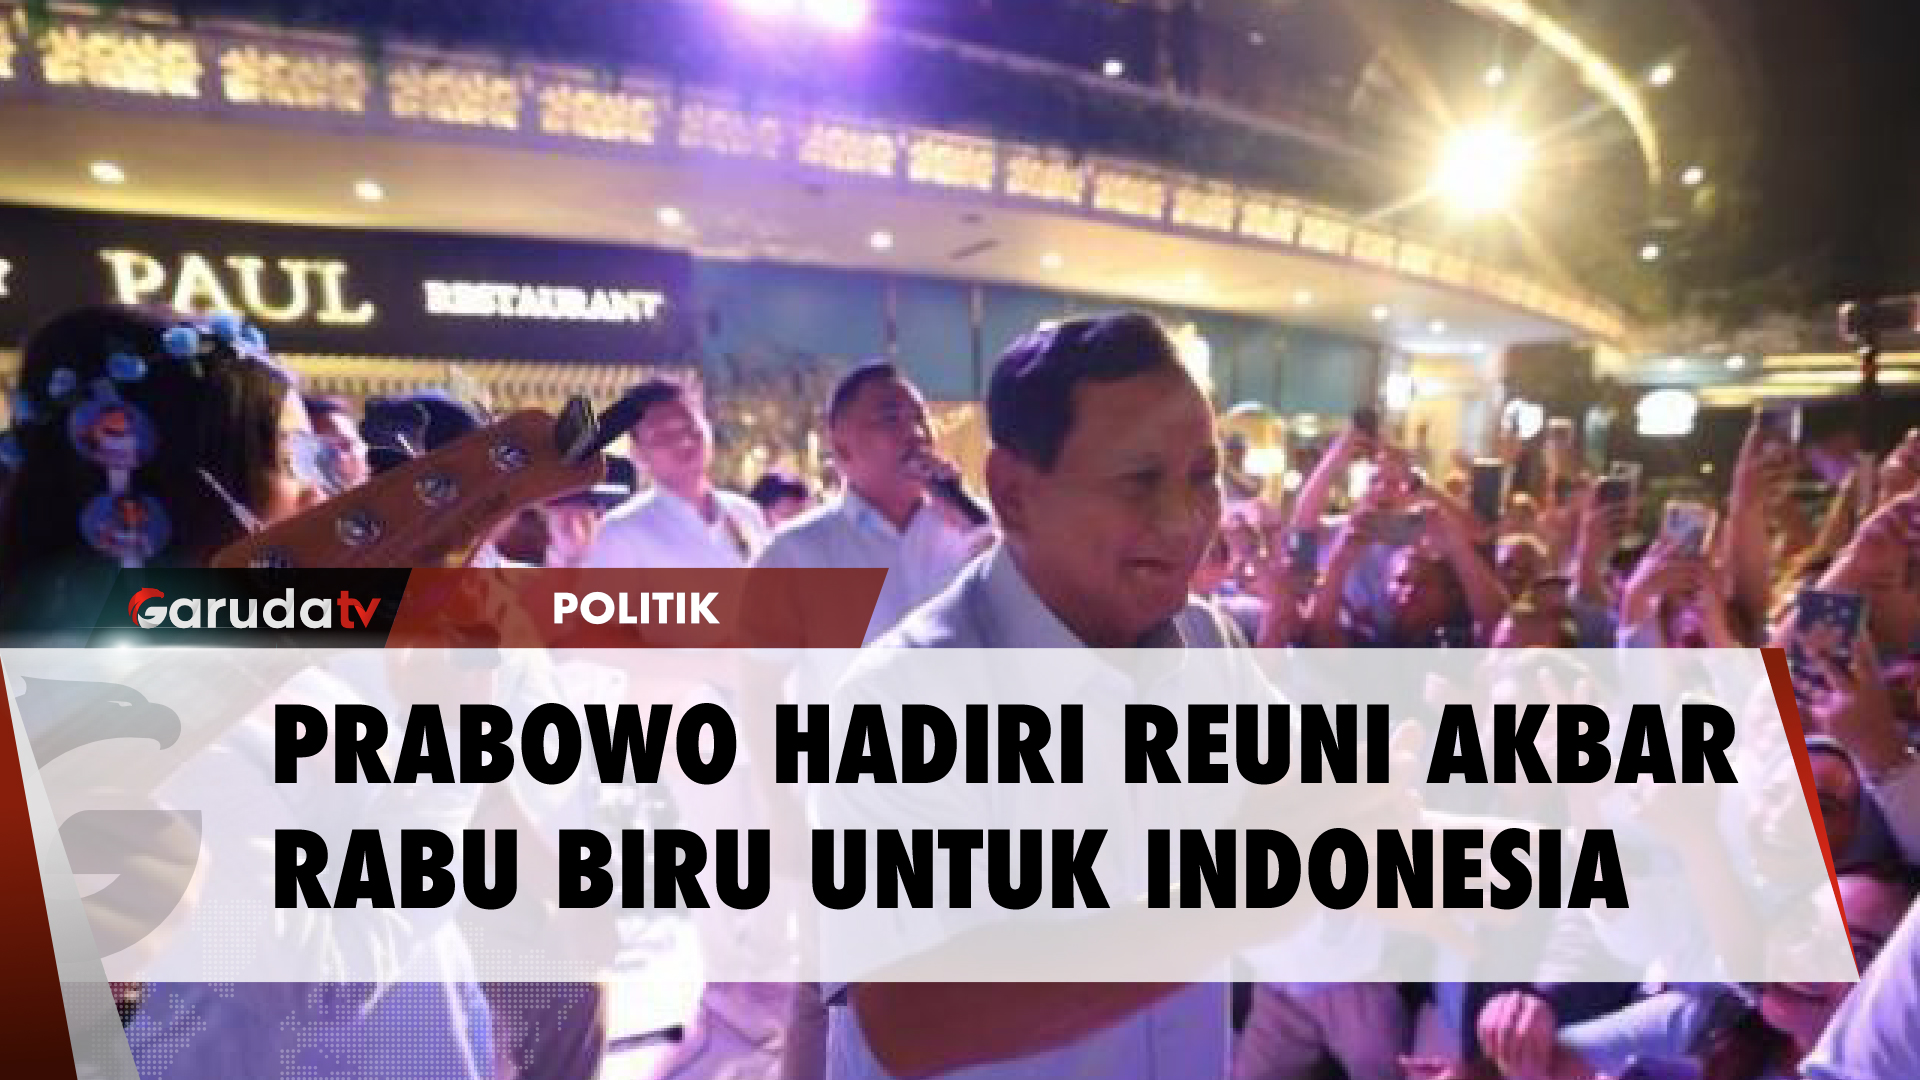 Relawan Sambut Antusias Kedatangan Prabowo di Reuni Akbar Rabu Biru